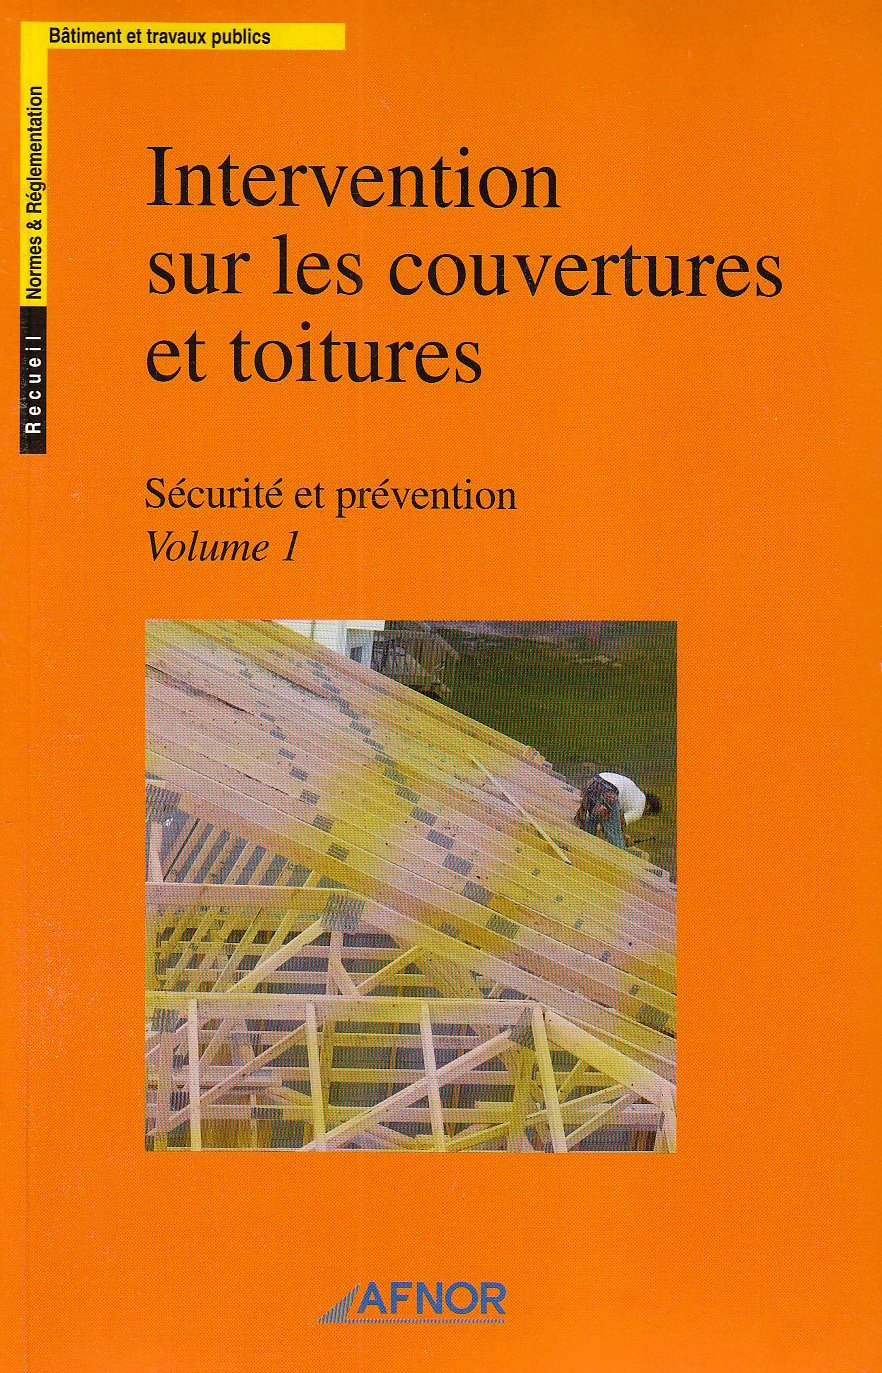 Intervention sur les couvertures et toitures - Sécurité et prévention - 2 volumes